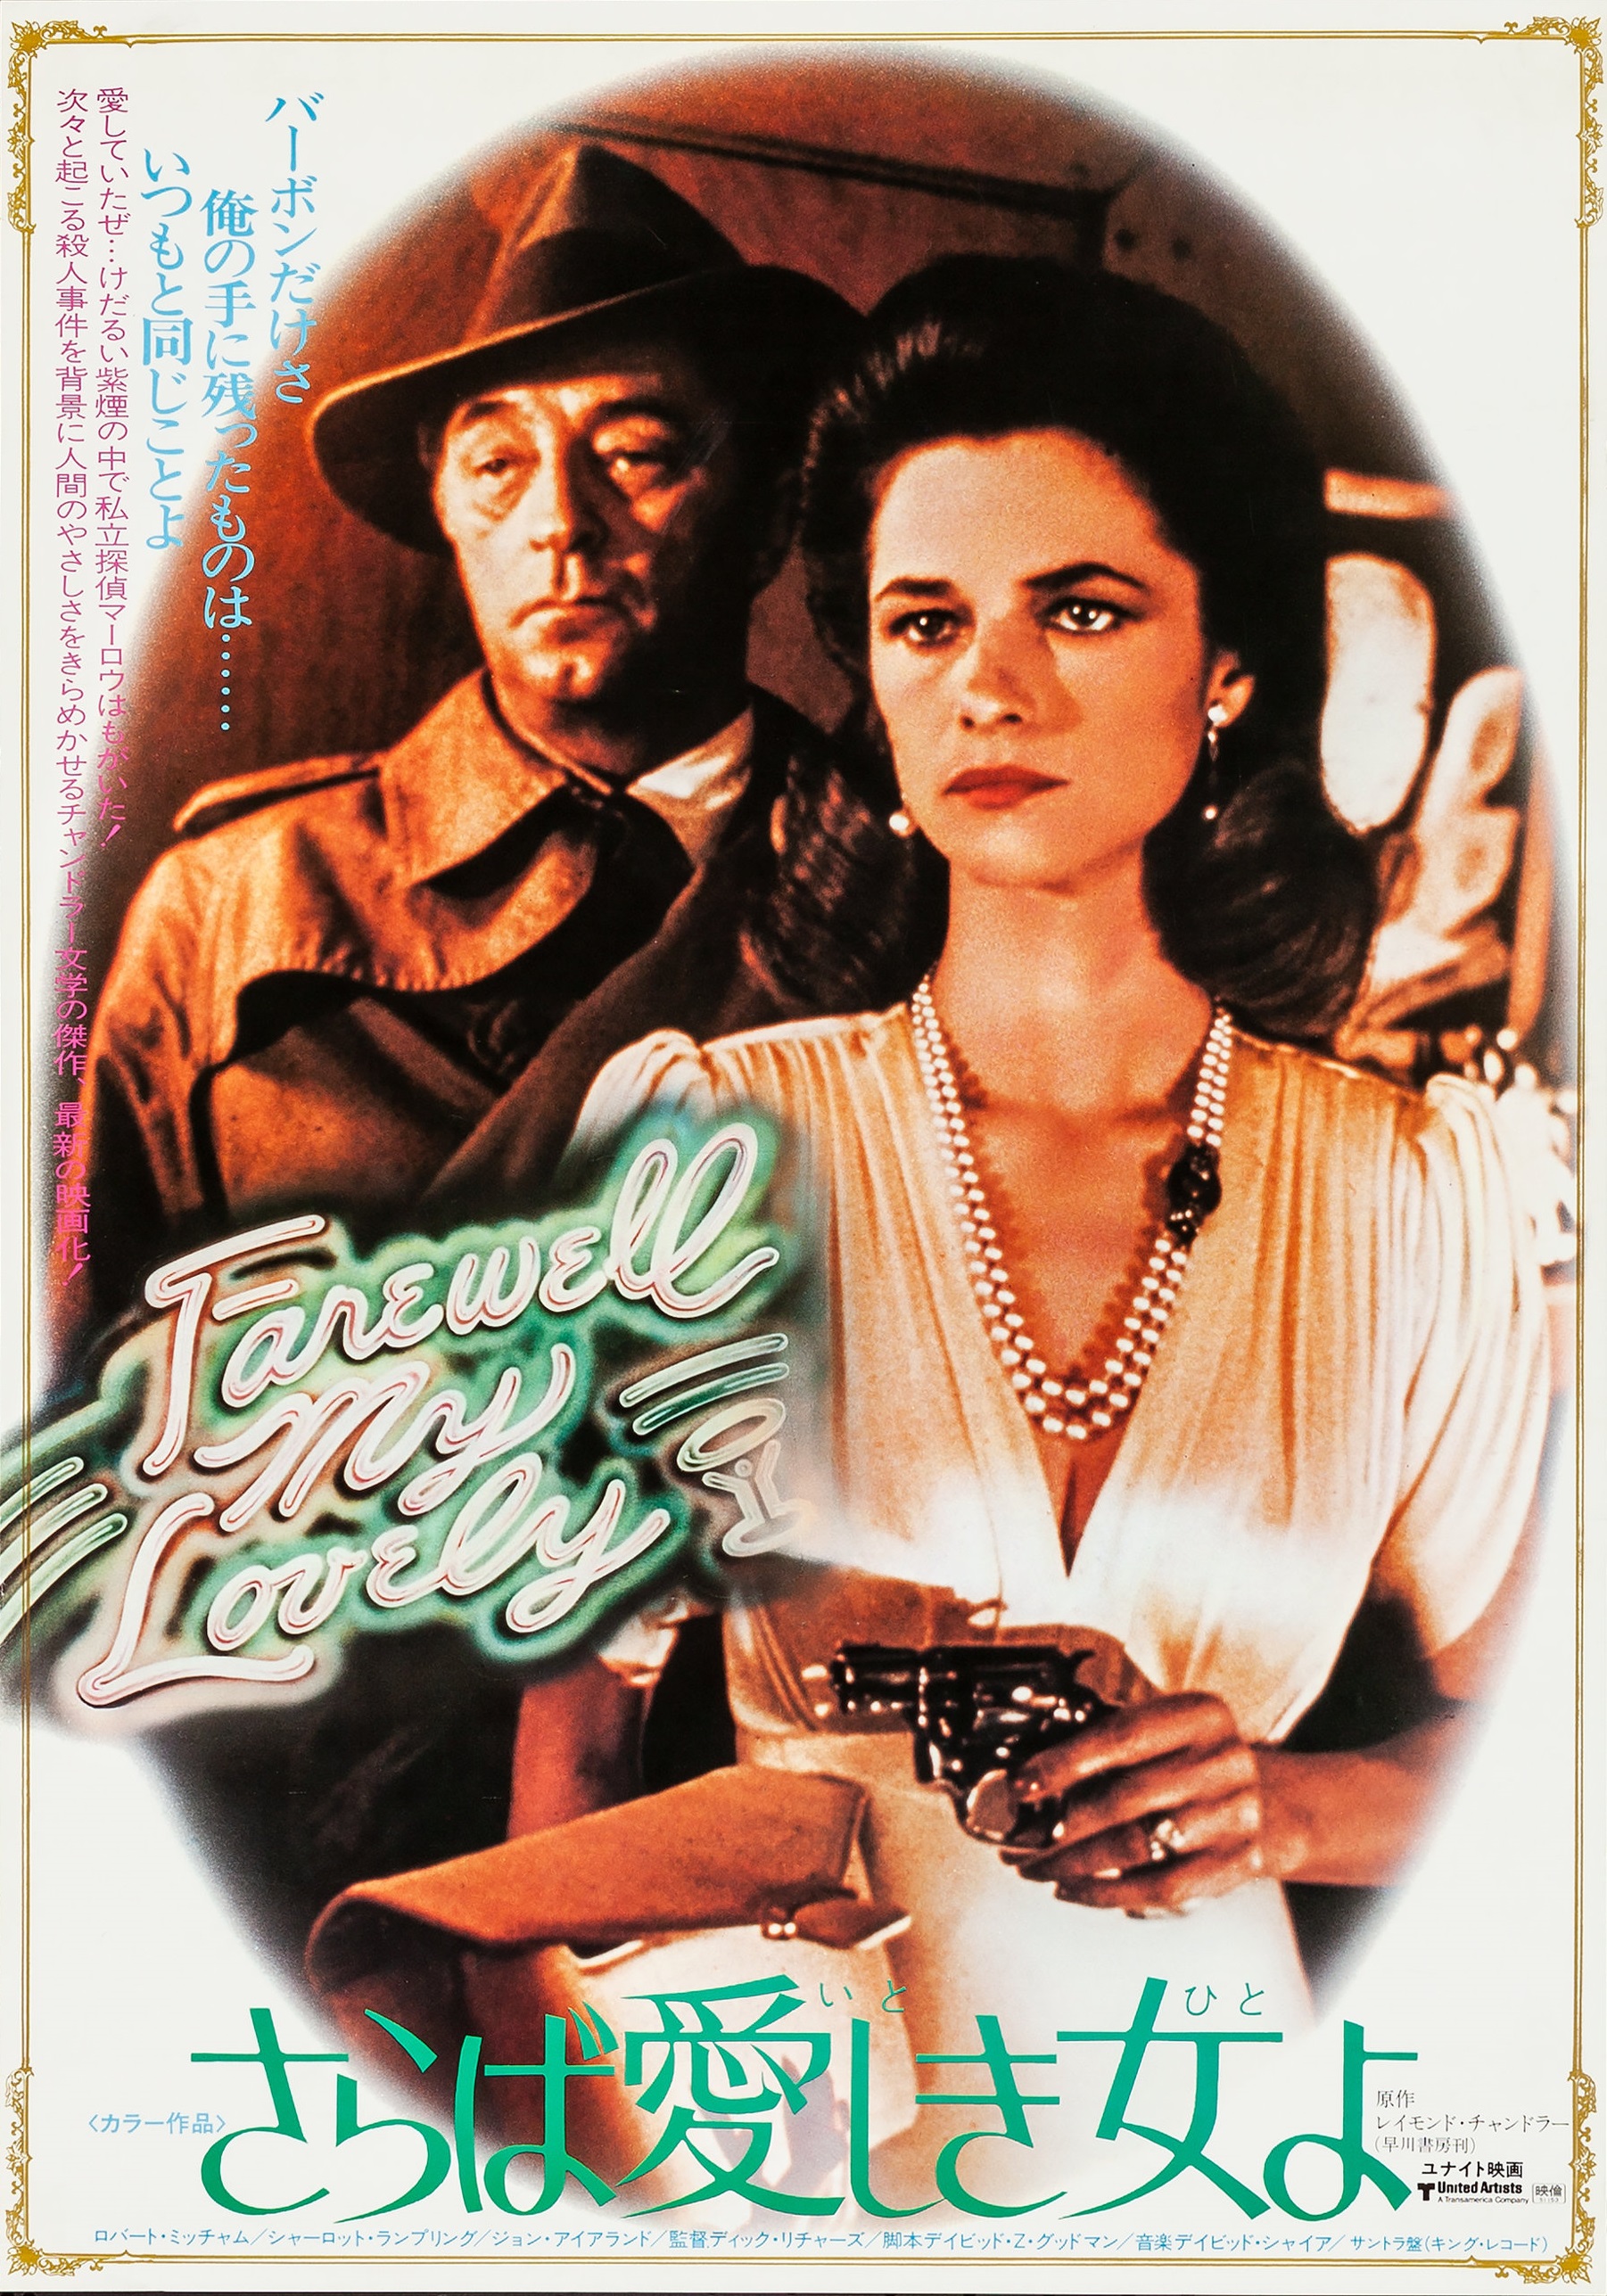 FAREWELL, MY LOVELY (1975)